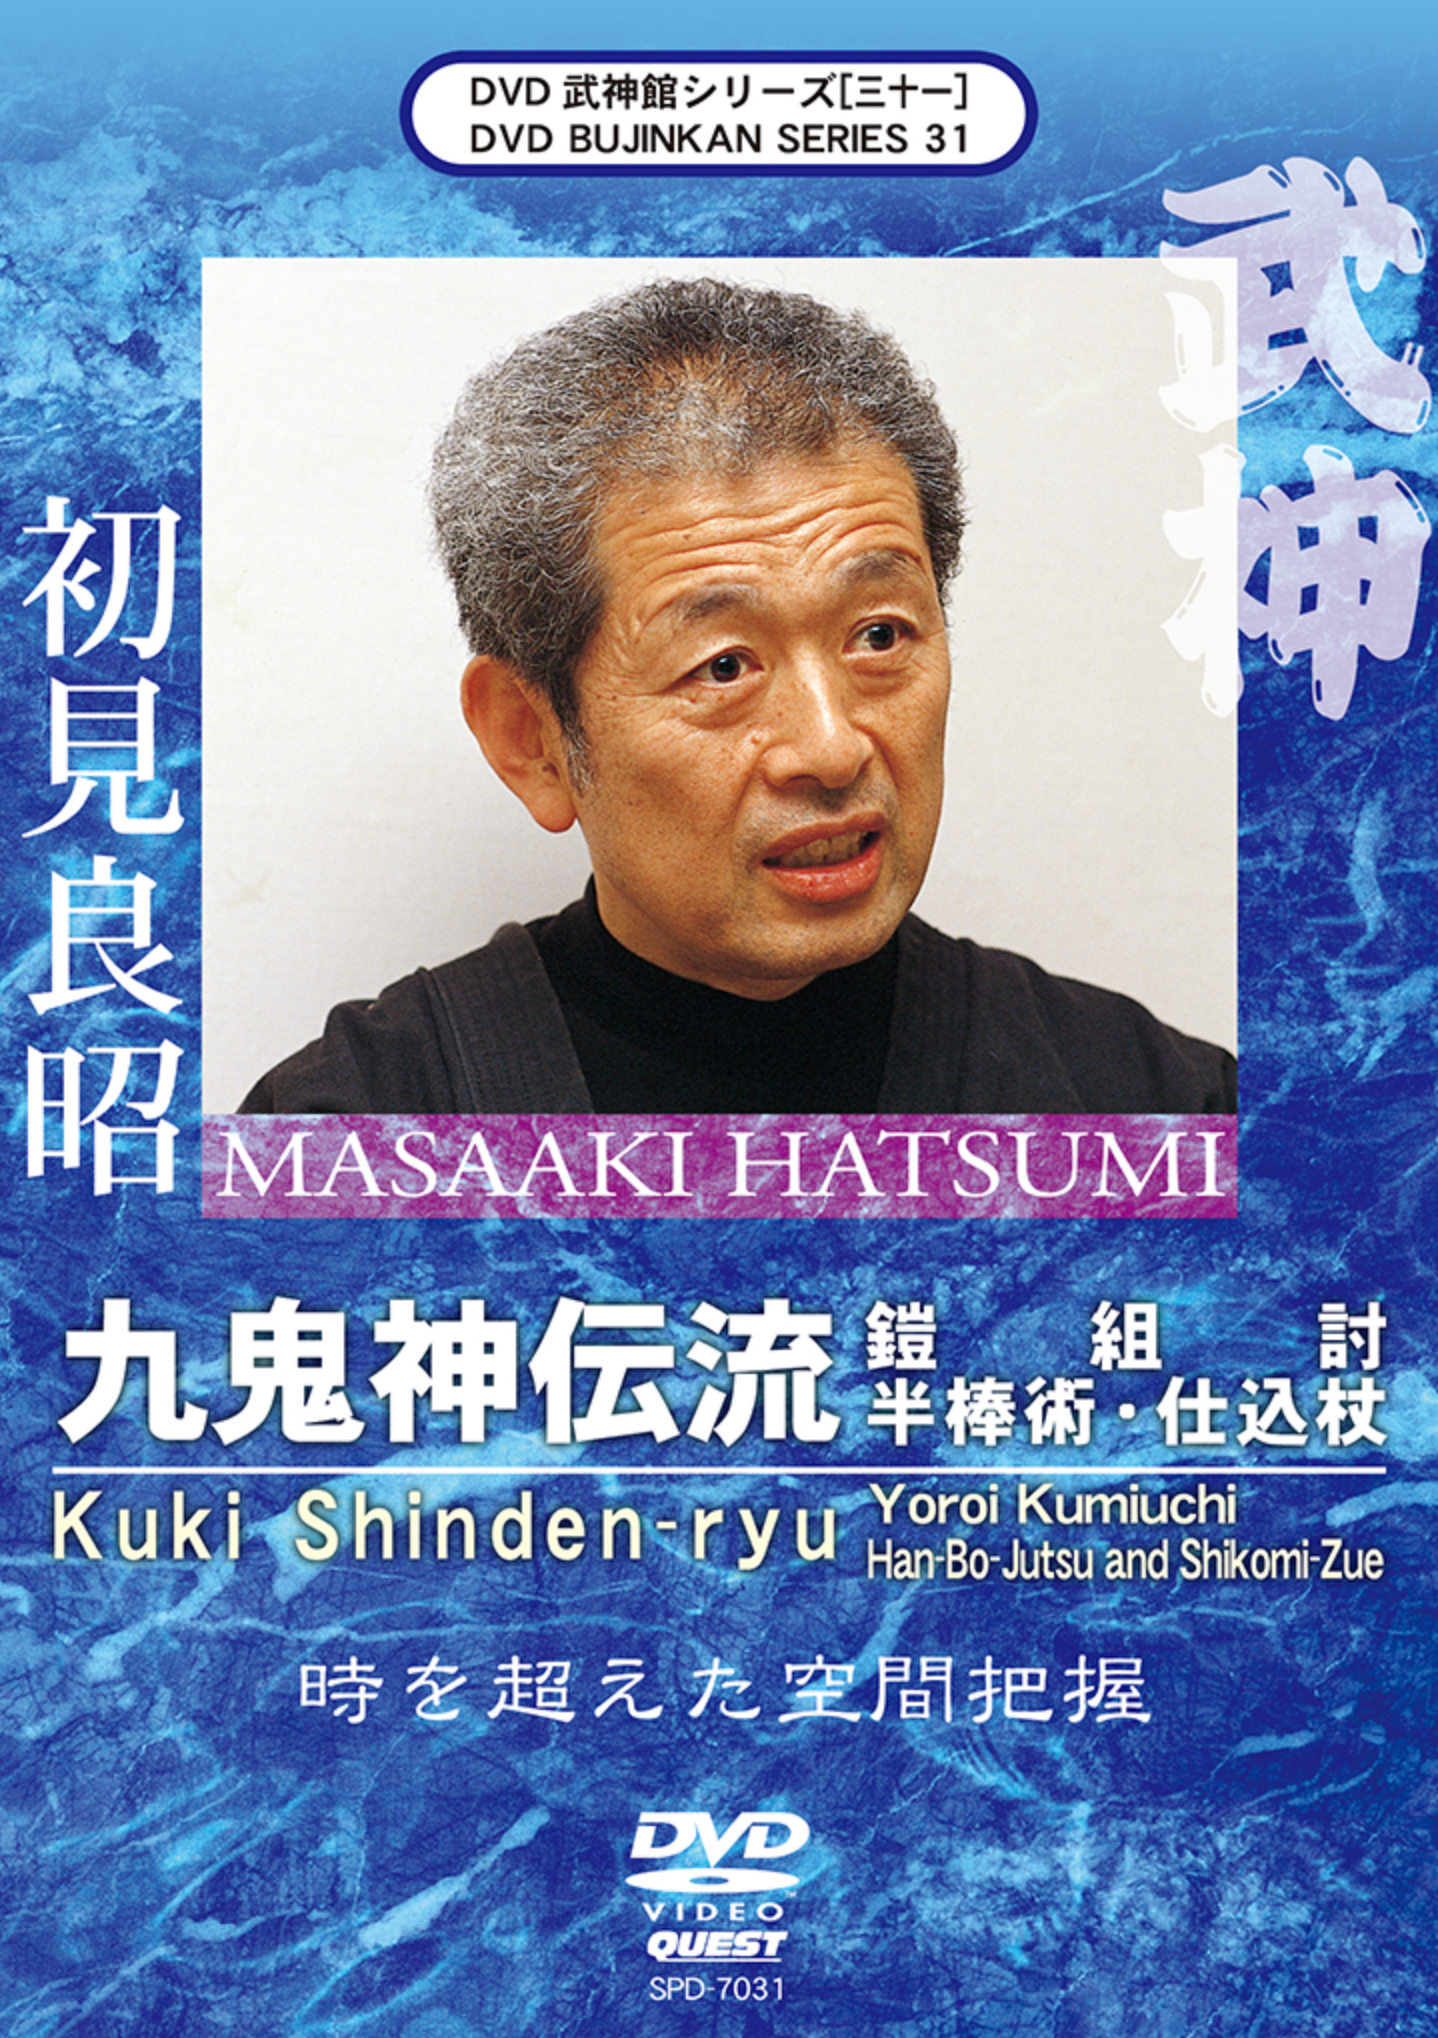 Bujinkan DVD Series 31: Kuki Shinden Ryu Yoroi Kumiuchi with Masaaki Hatsumi - Budovideos Inc